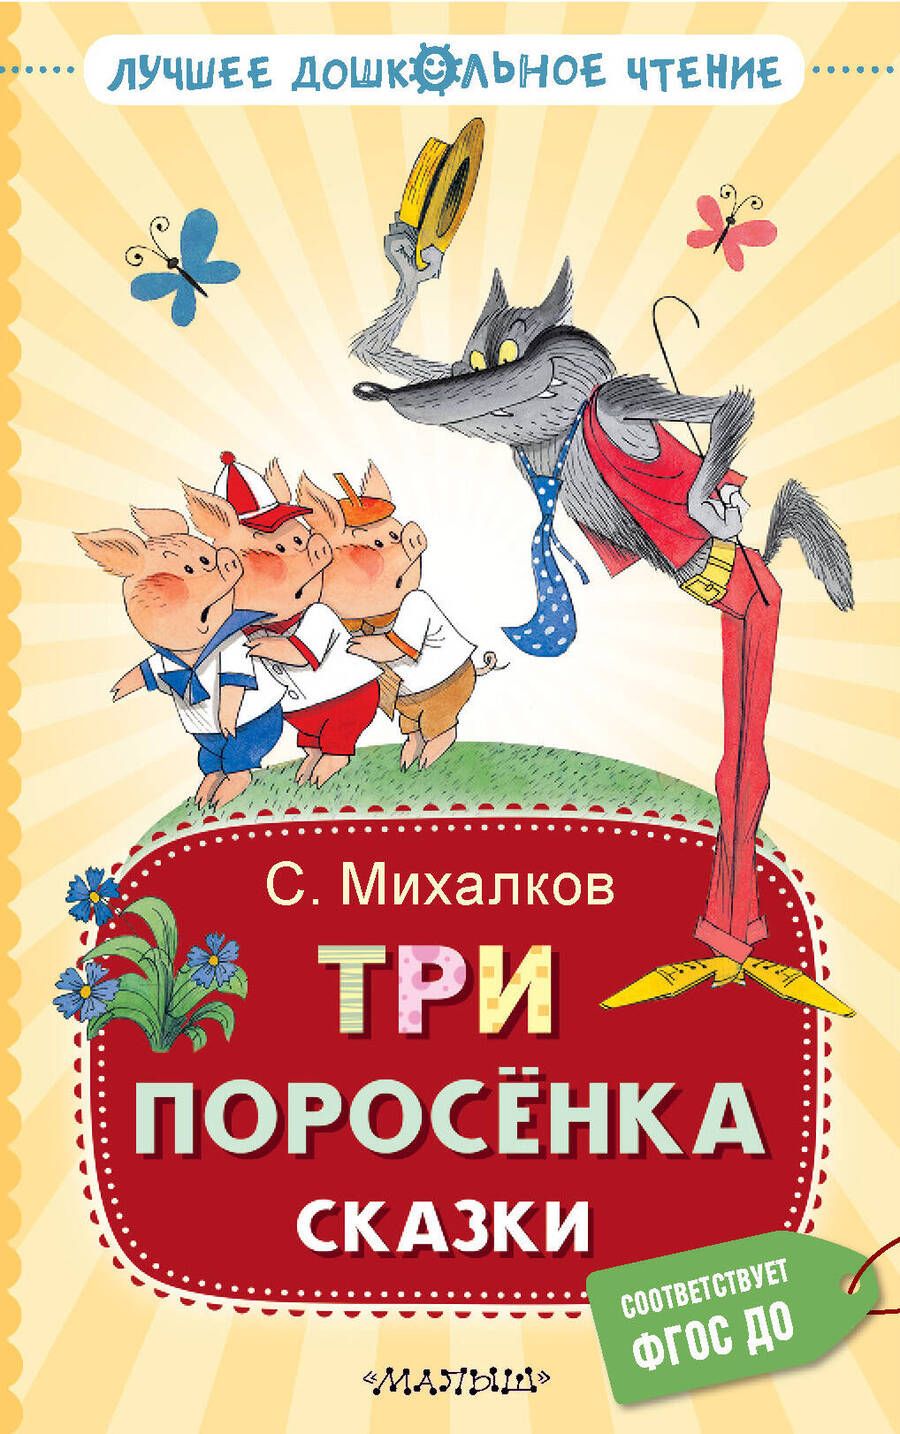 Обложка книги "Михалков: Три поросёнка. Сказки"